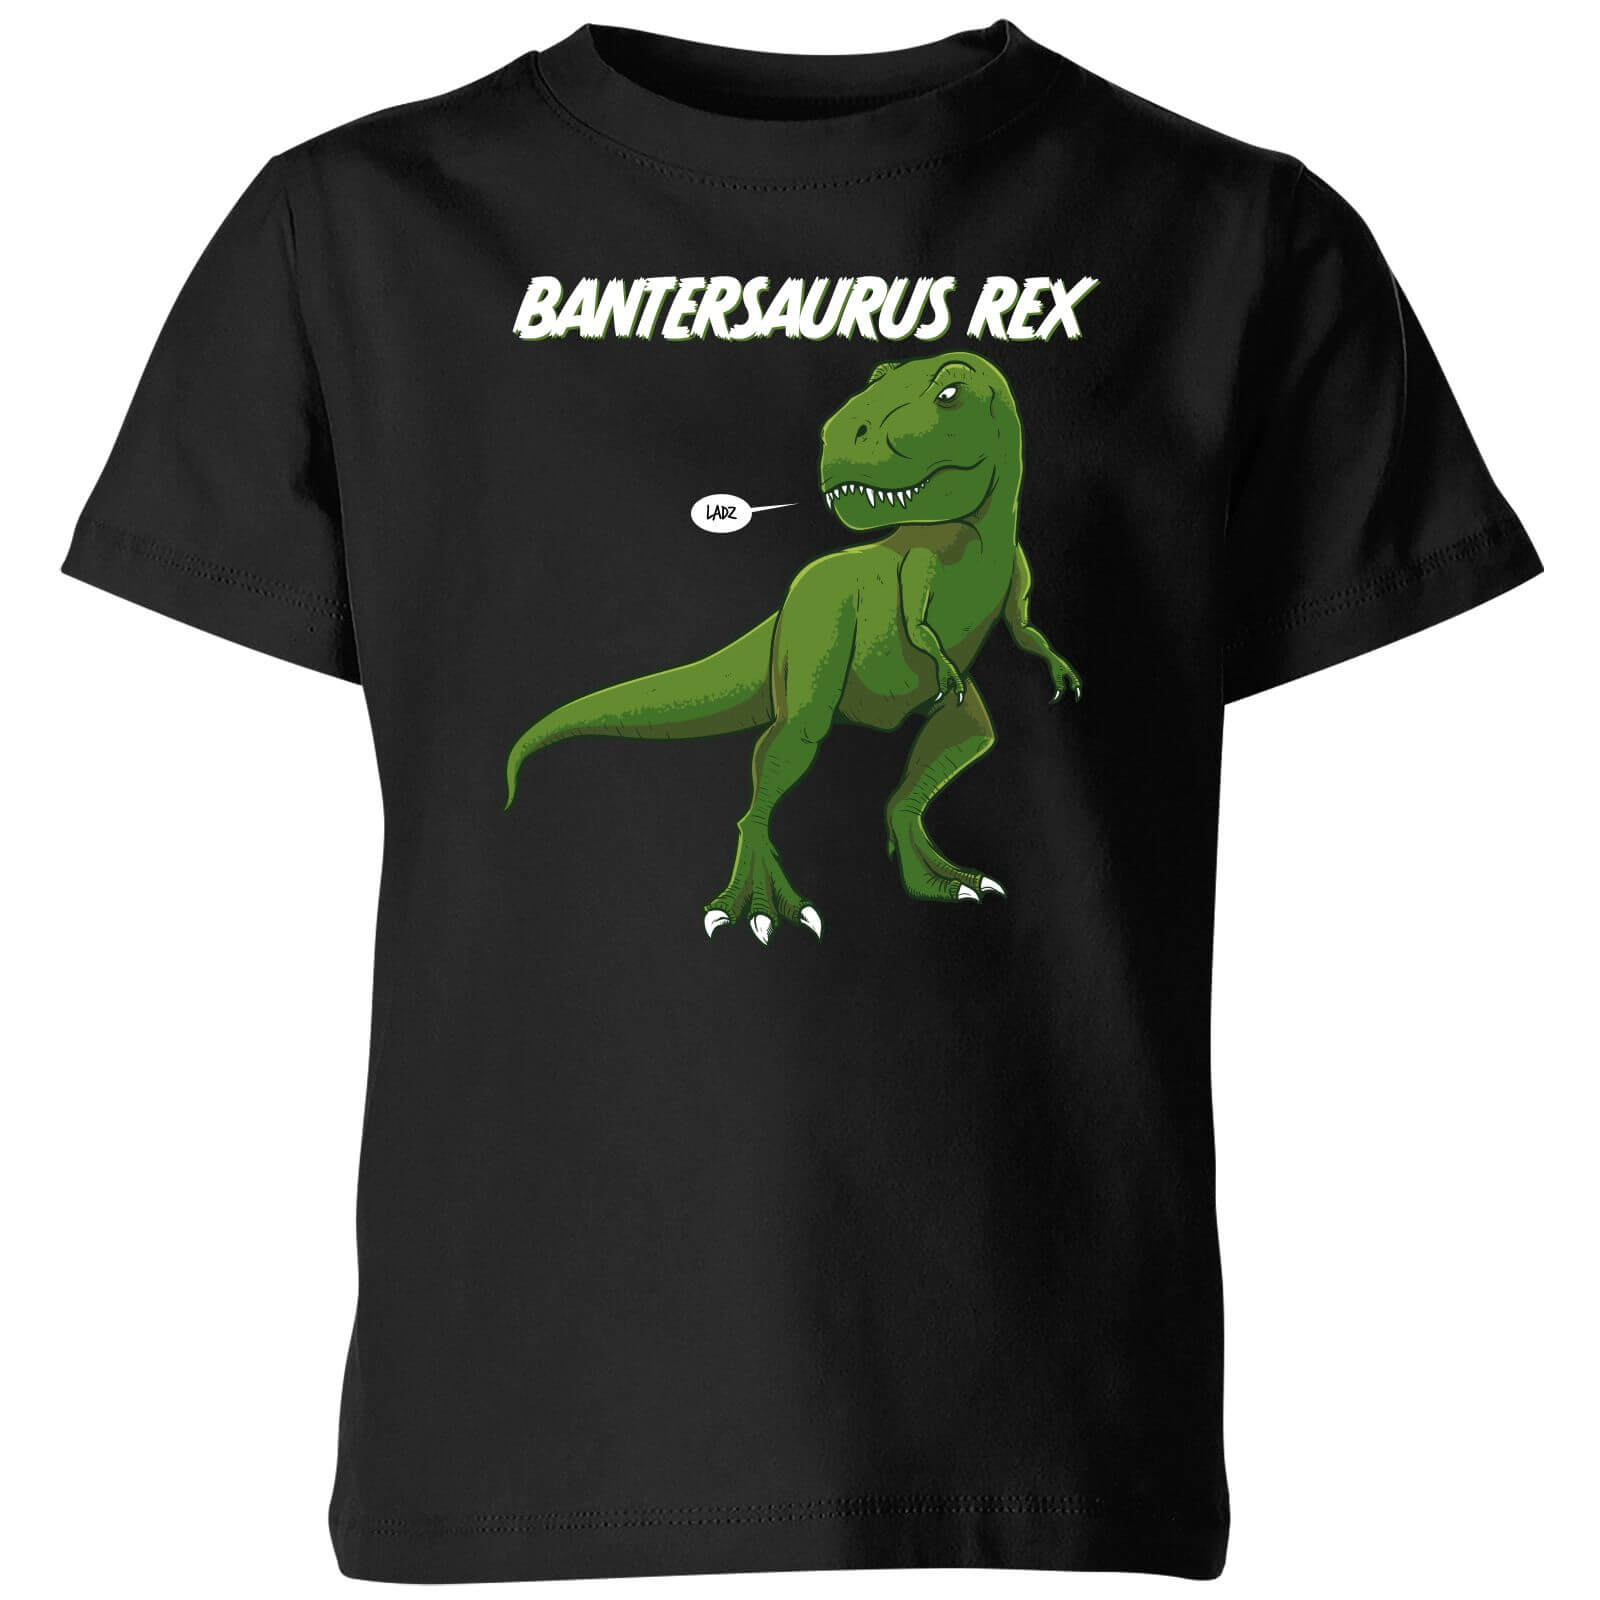 Bantersaurus Rex Kids' T-Shirt - Black - 3-4 Years - Black